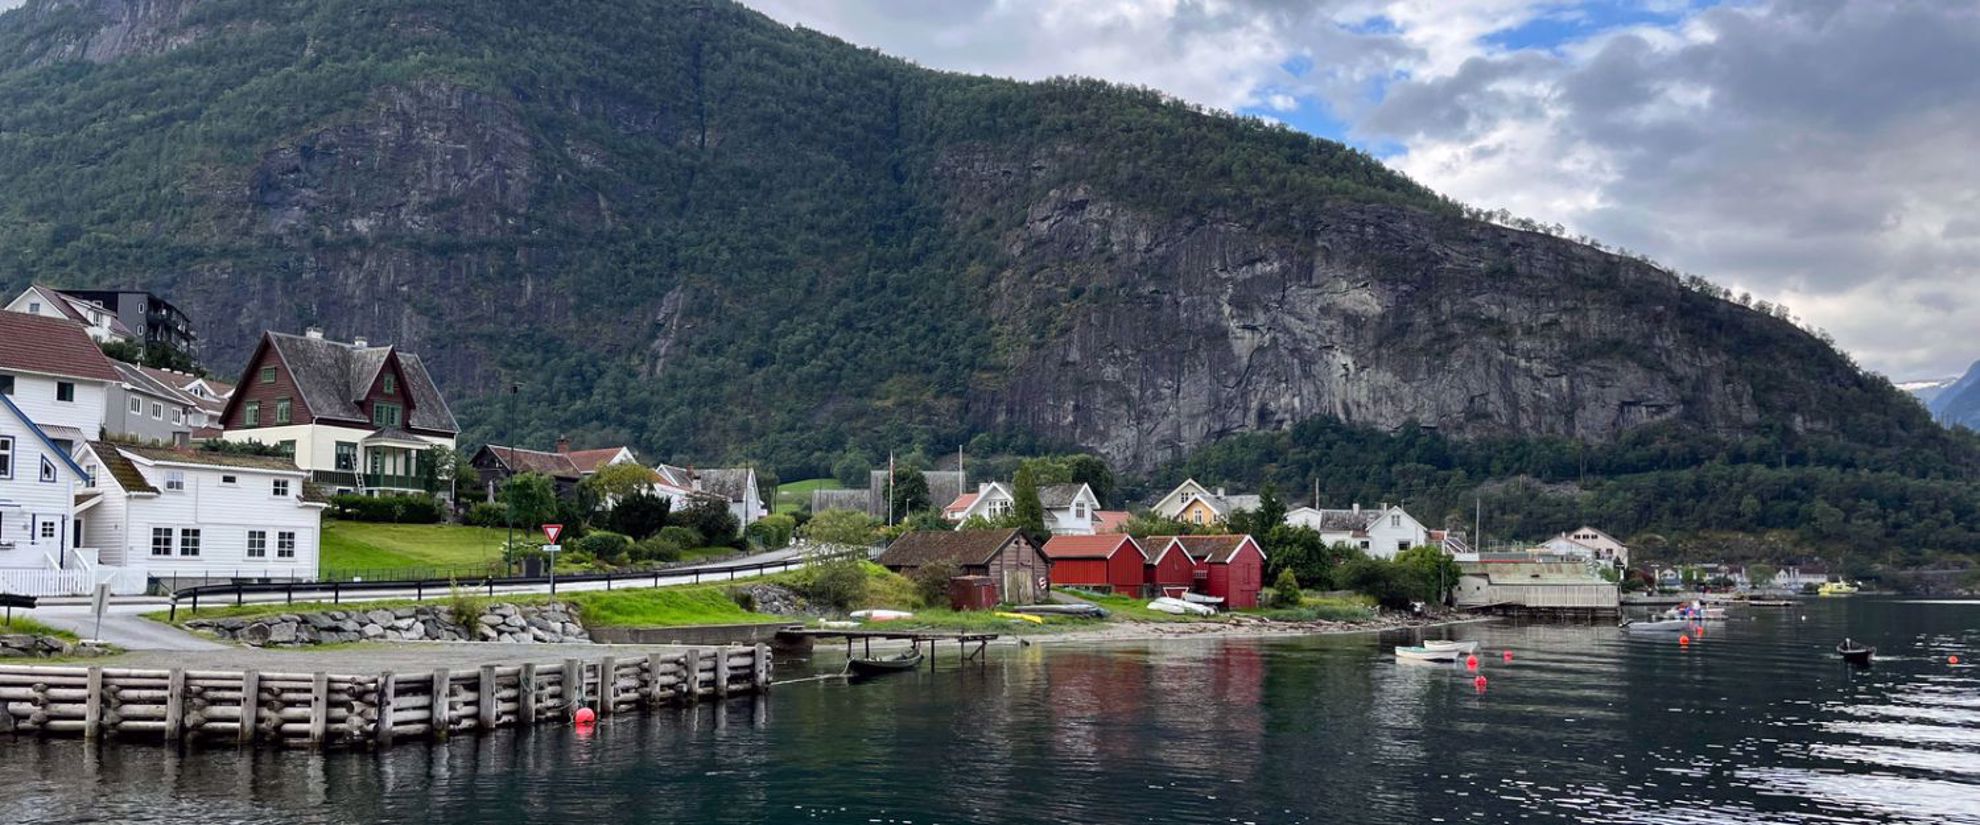 Exploring Norway | Hiking, Kayaking, Biking Oslo to Bergen, Norway